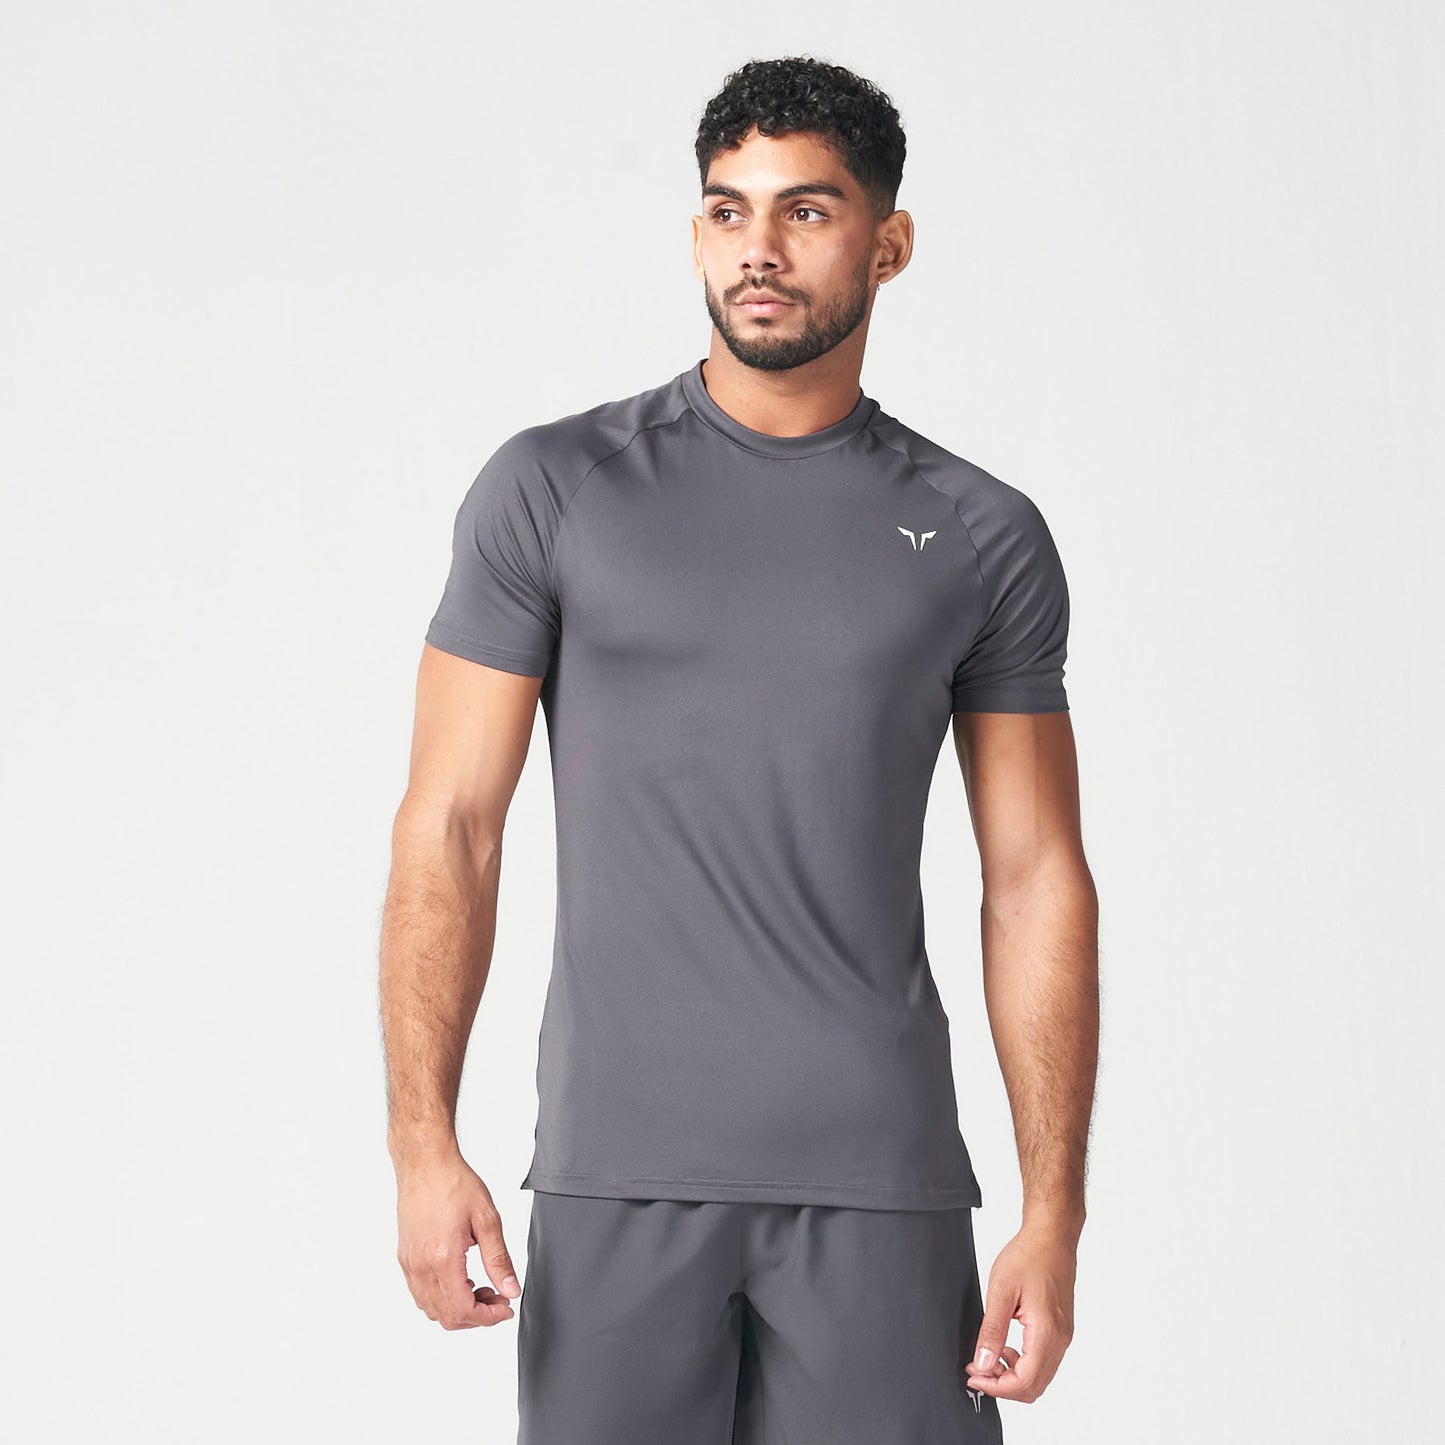 Shop Men's Gym Clothes & Workout Clothes - Gymshark